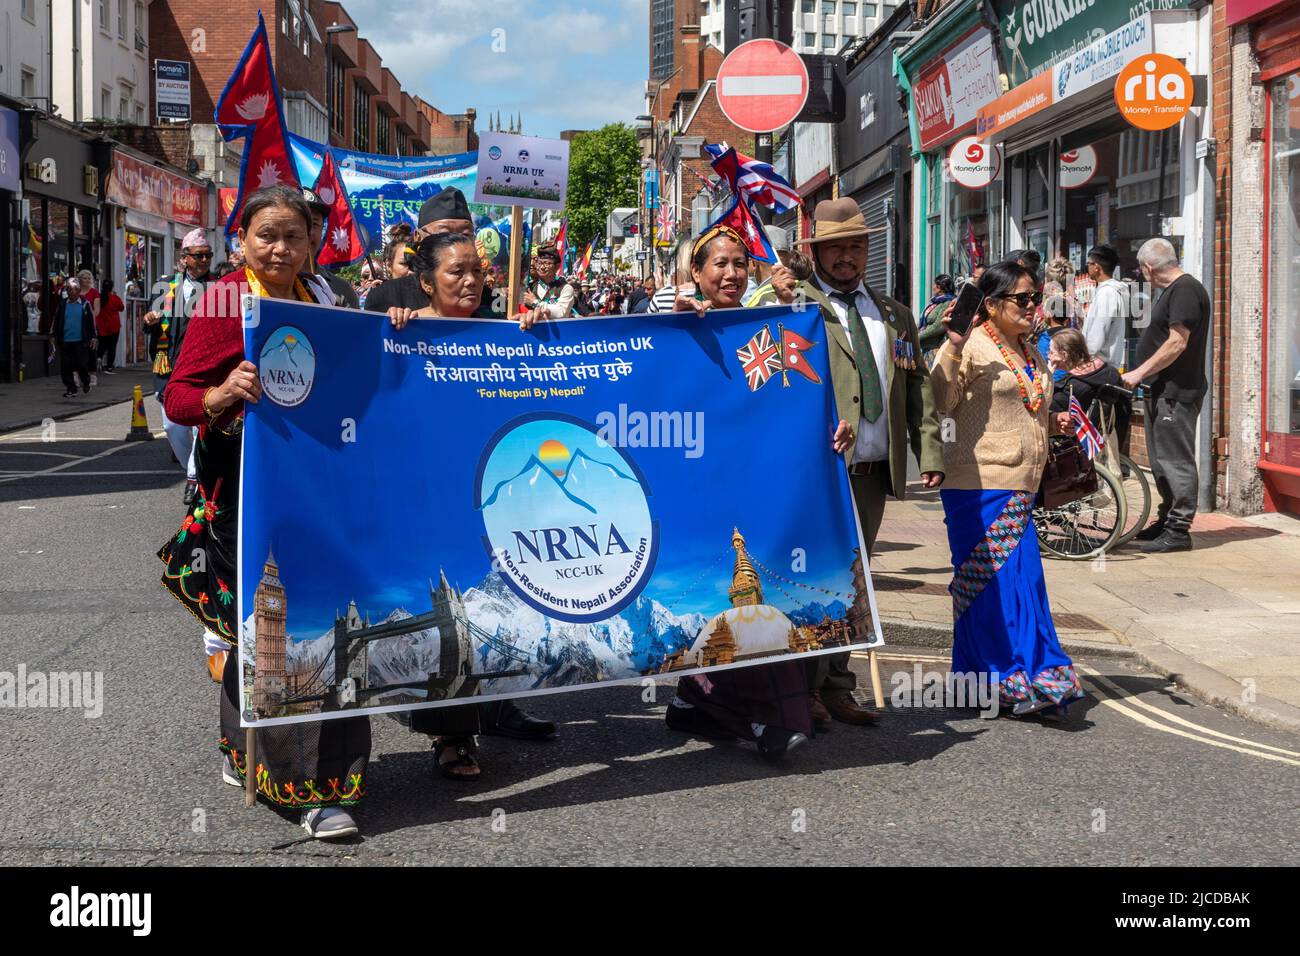 Die nepalesische Vereinigung, die nicht in Großbritannien ansässig ist, nimmt an der Grand Parade am Victoria Day Teil, einer jährlichen Veranstaltung in Aldershot, Hampshire, England, Großbritannien Stockfoto